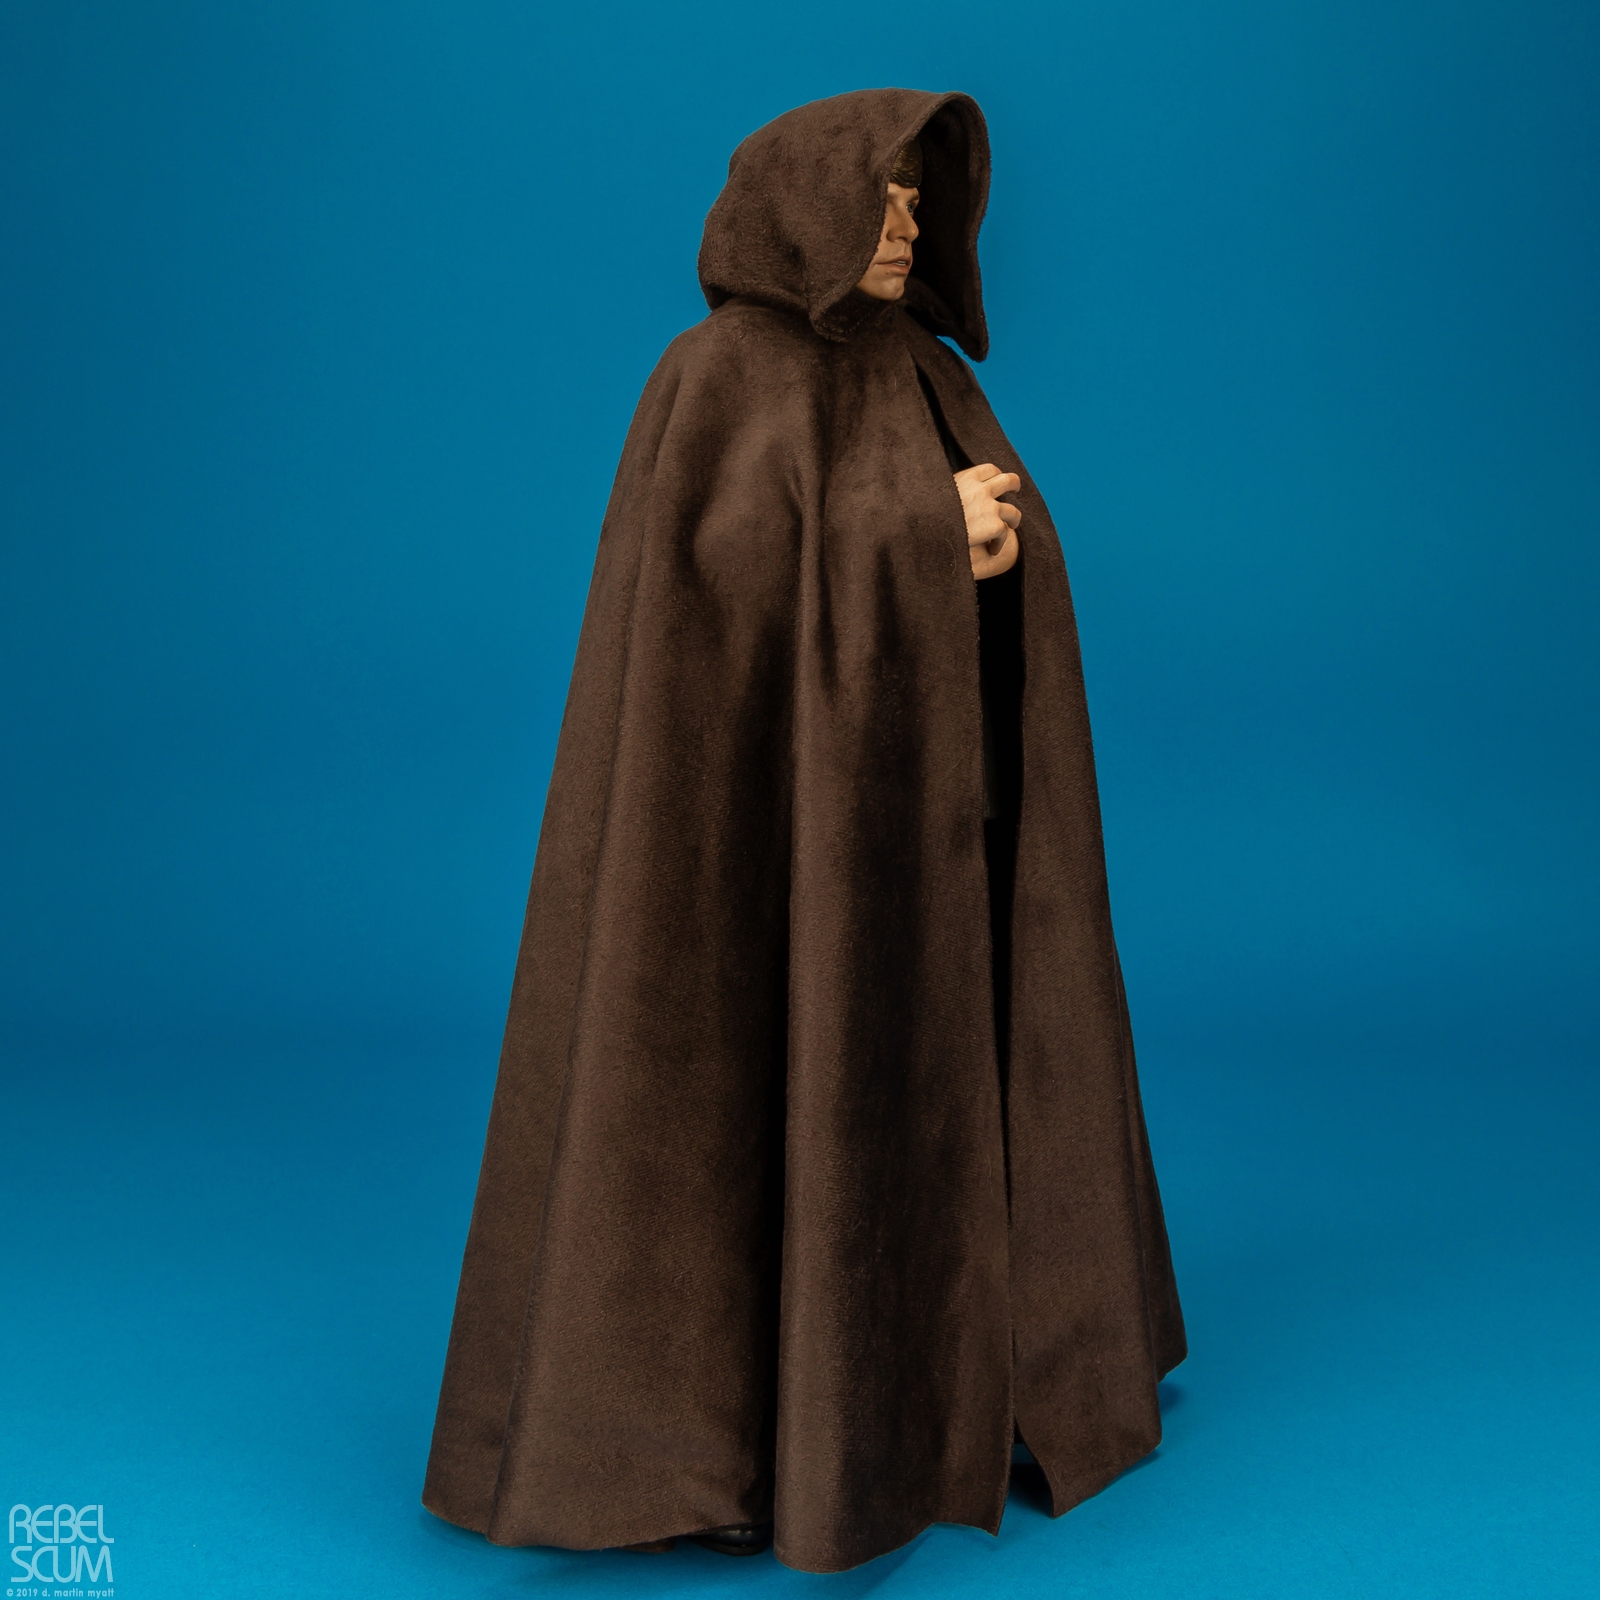 Luke-Skywalker-MMS429-Return-Of-The-Jedi-Hot-Toys-002.jpg